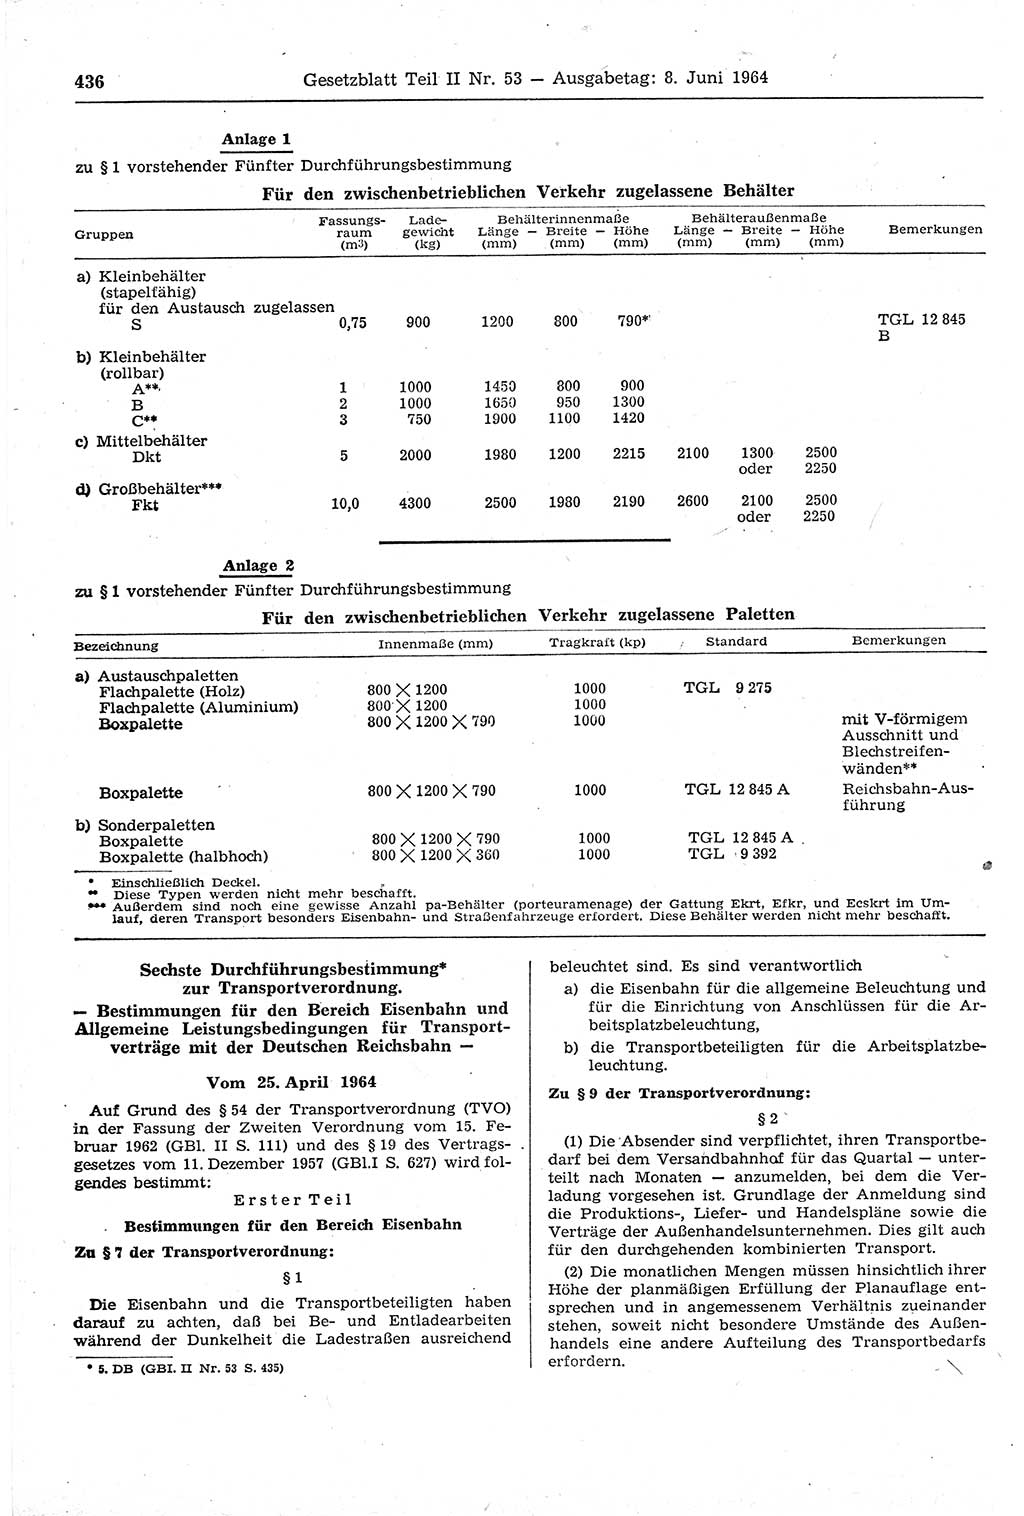 Gesetzblatt (GBl.) der Deutschen Demokratischen Republik (DDR) Teil ⅠⅠ 1964, Seite 436 (GBl. DDR ⅠⅠ 1964, S. 436)